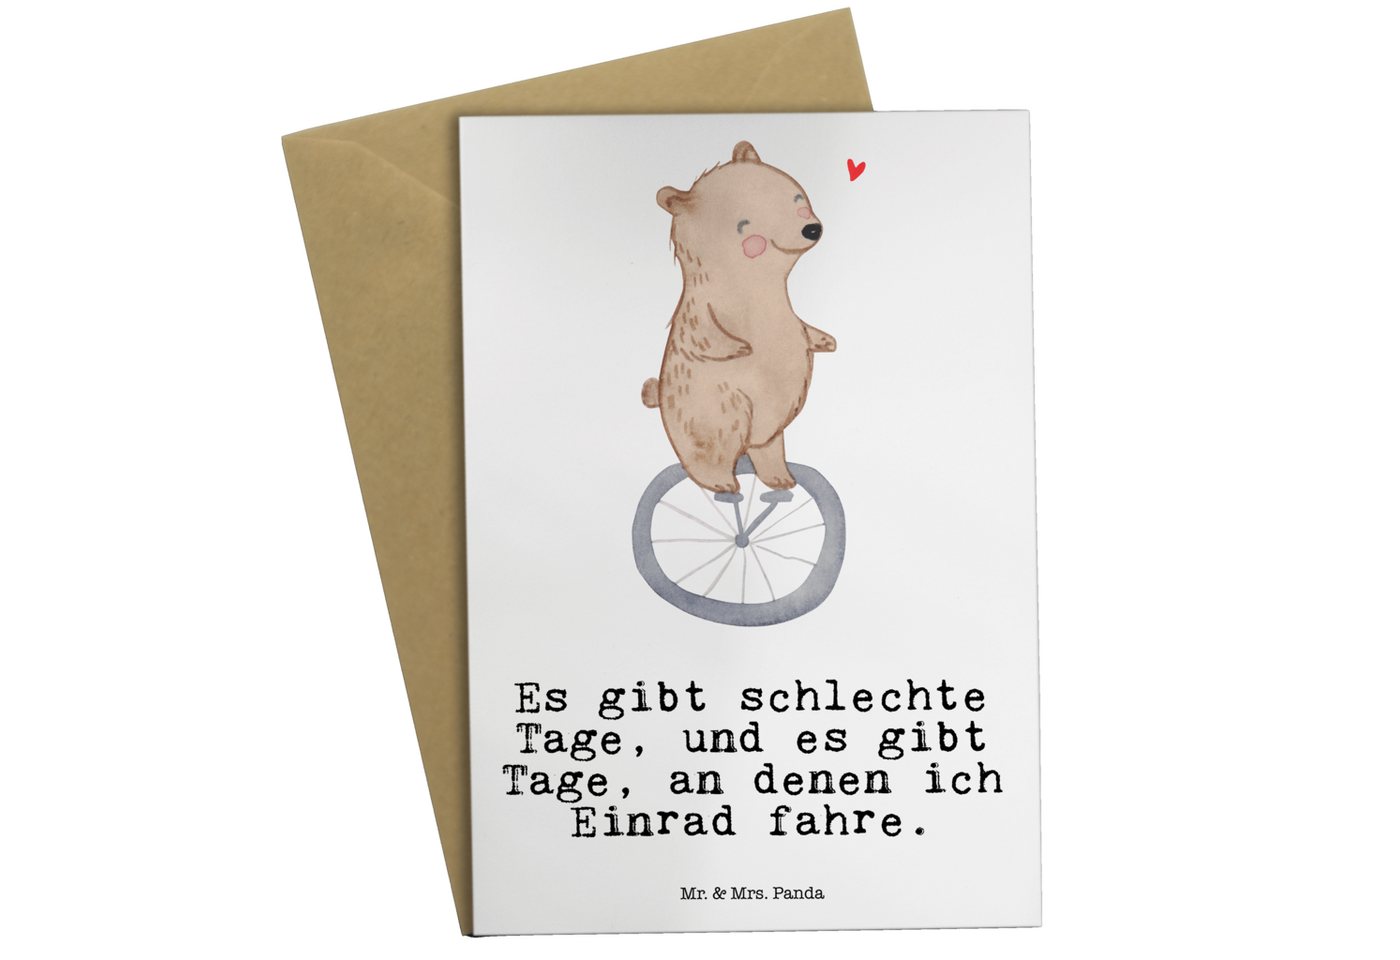 Mr. & Mrs. Panda Grußkarte Bär Einrad fahren - Weiß - Geschenk, Danke, Dankeschön, Glückwunschka, Hochglänzende Veredelung von Mr. & Mrs. Panda